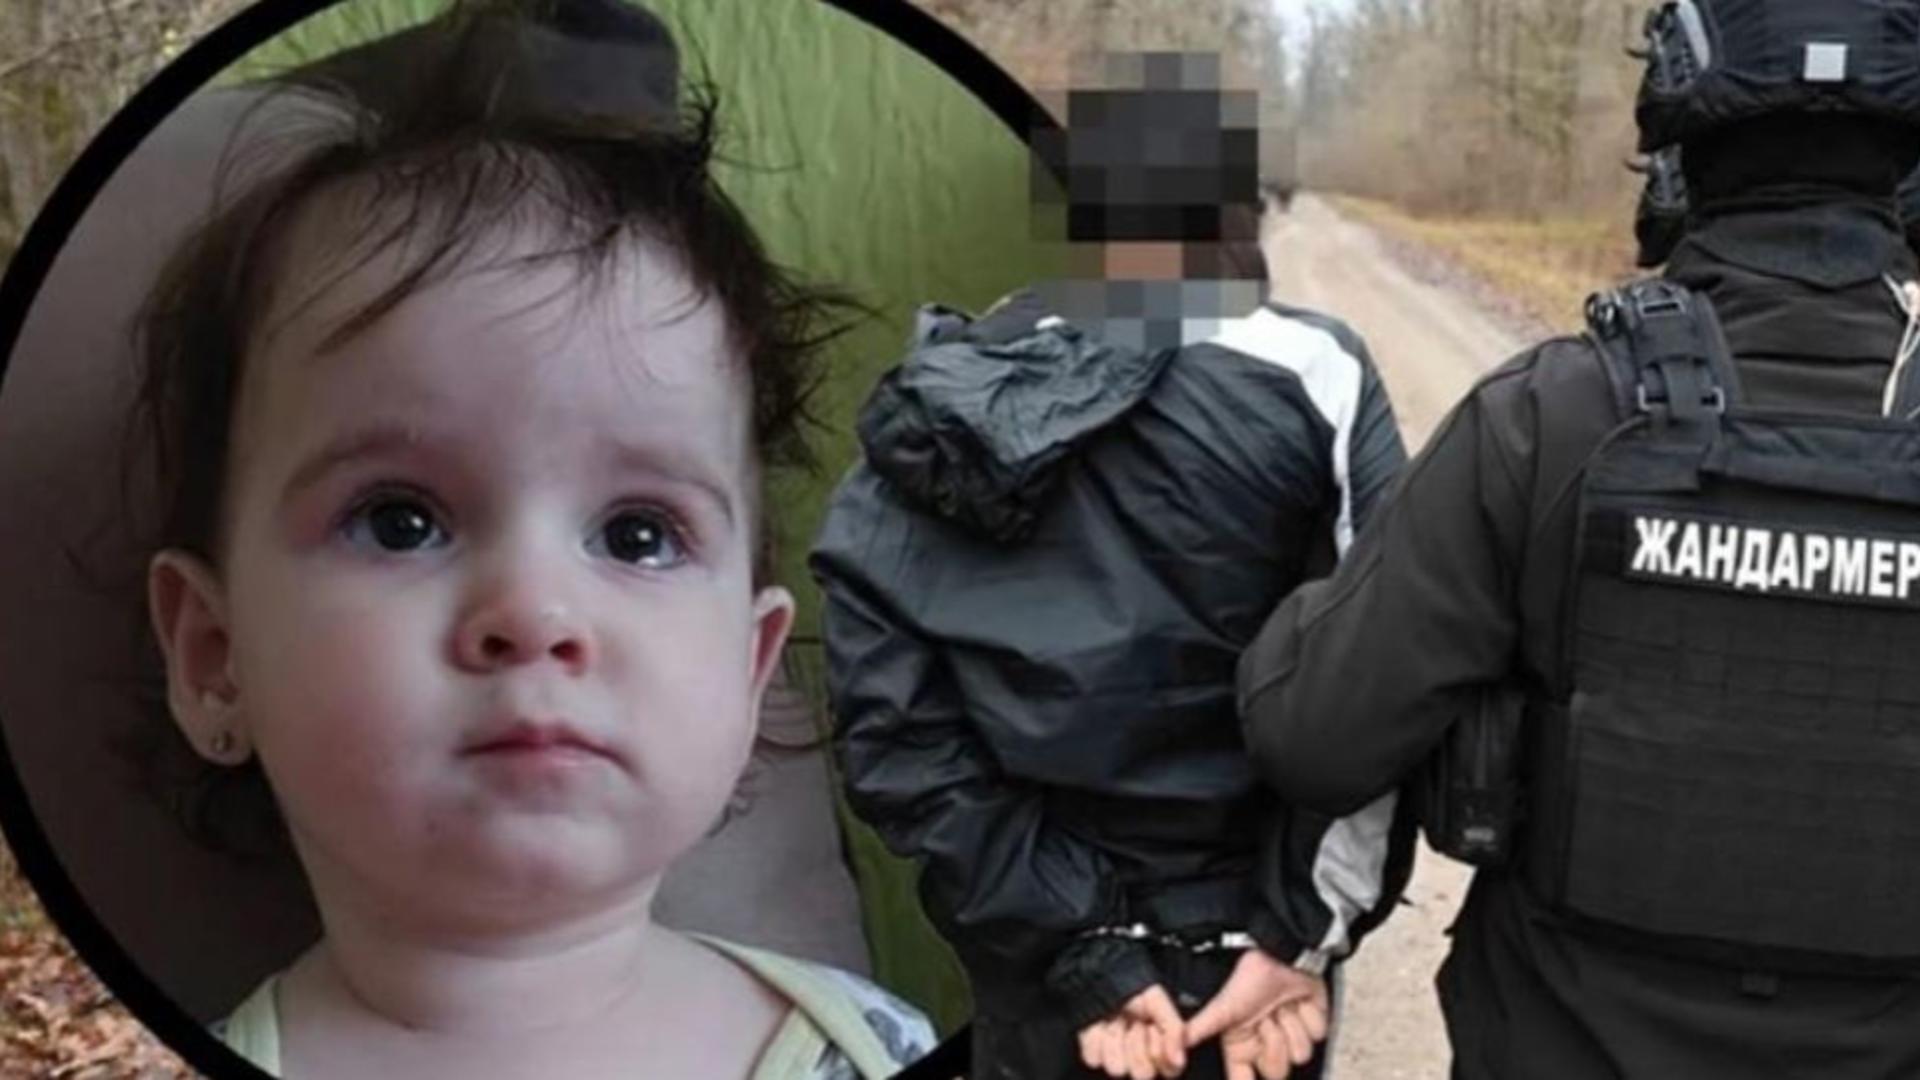 Româncele suspecte în cazul fetiței de 2 ani din Serbia, găsită moartă după 10 zile, au scăpat. Adevărații criminali au mărturisit totul